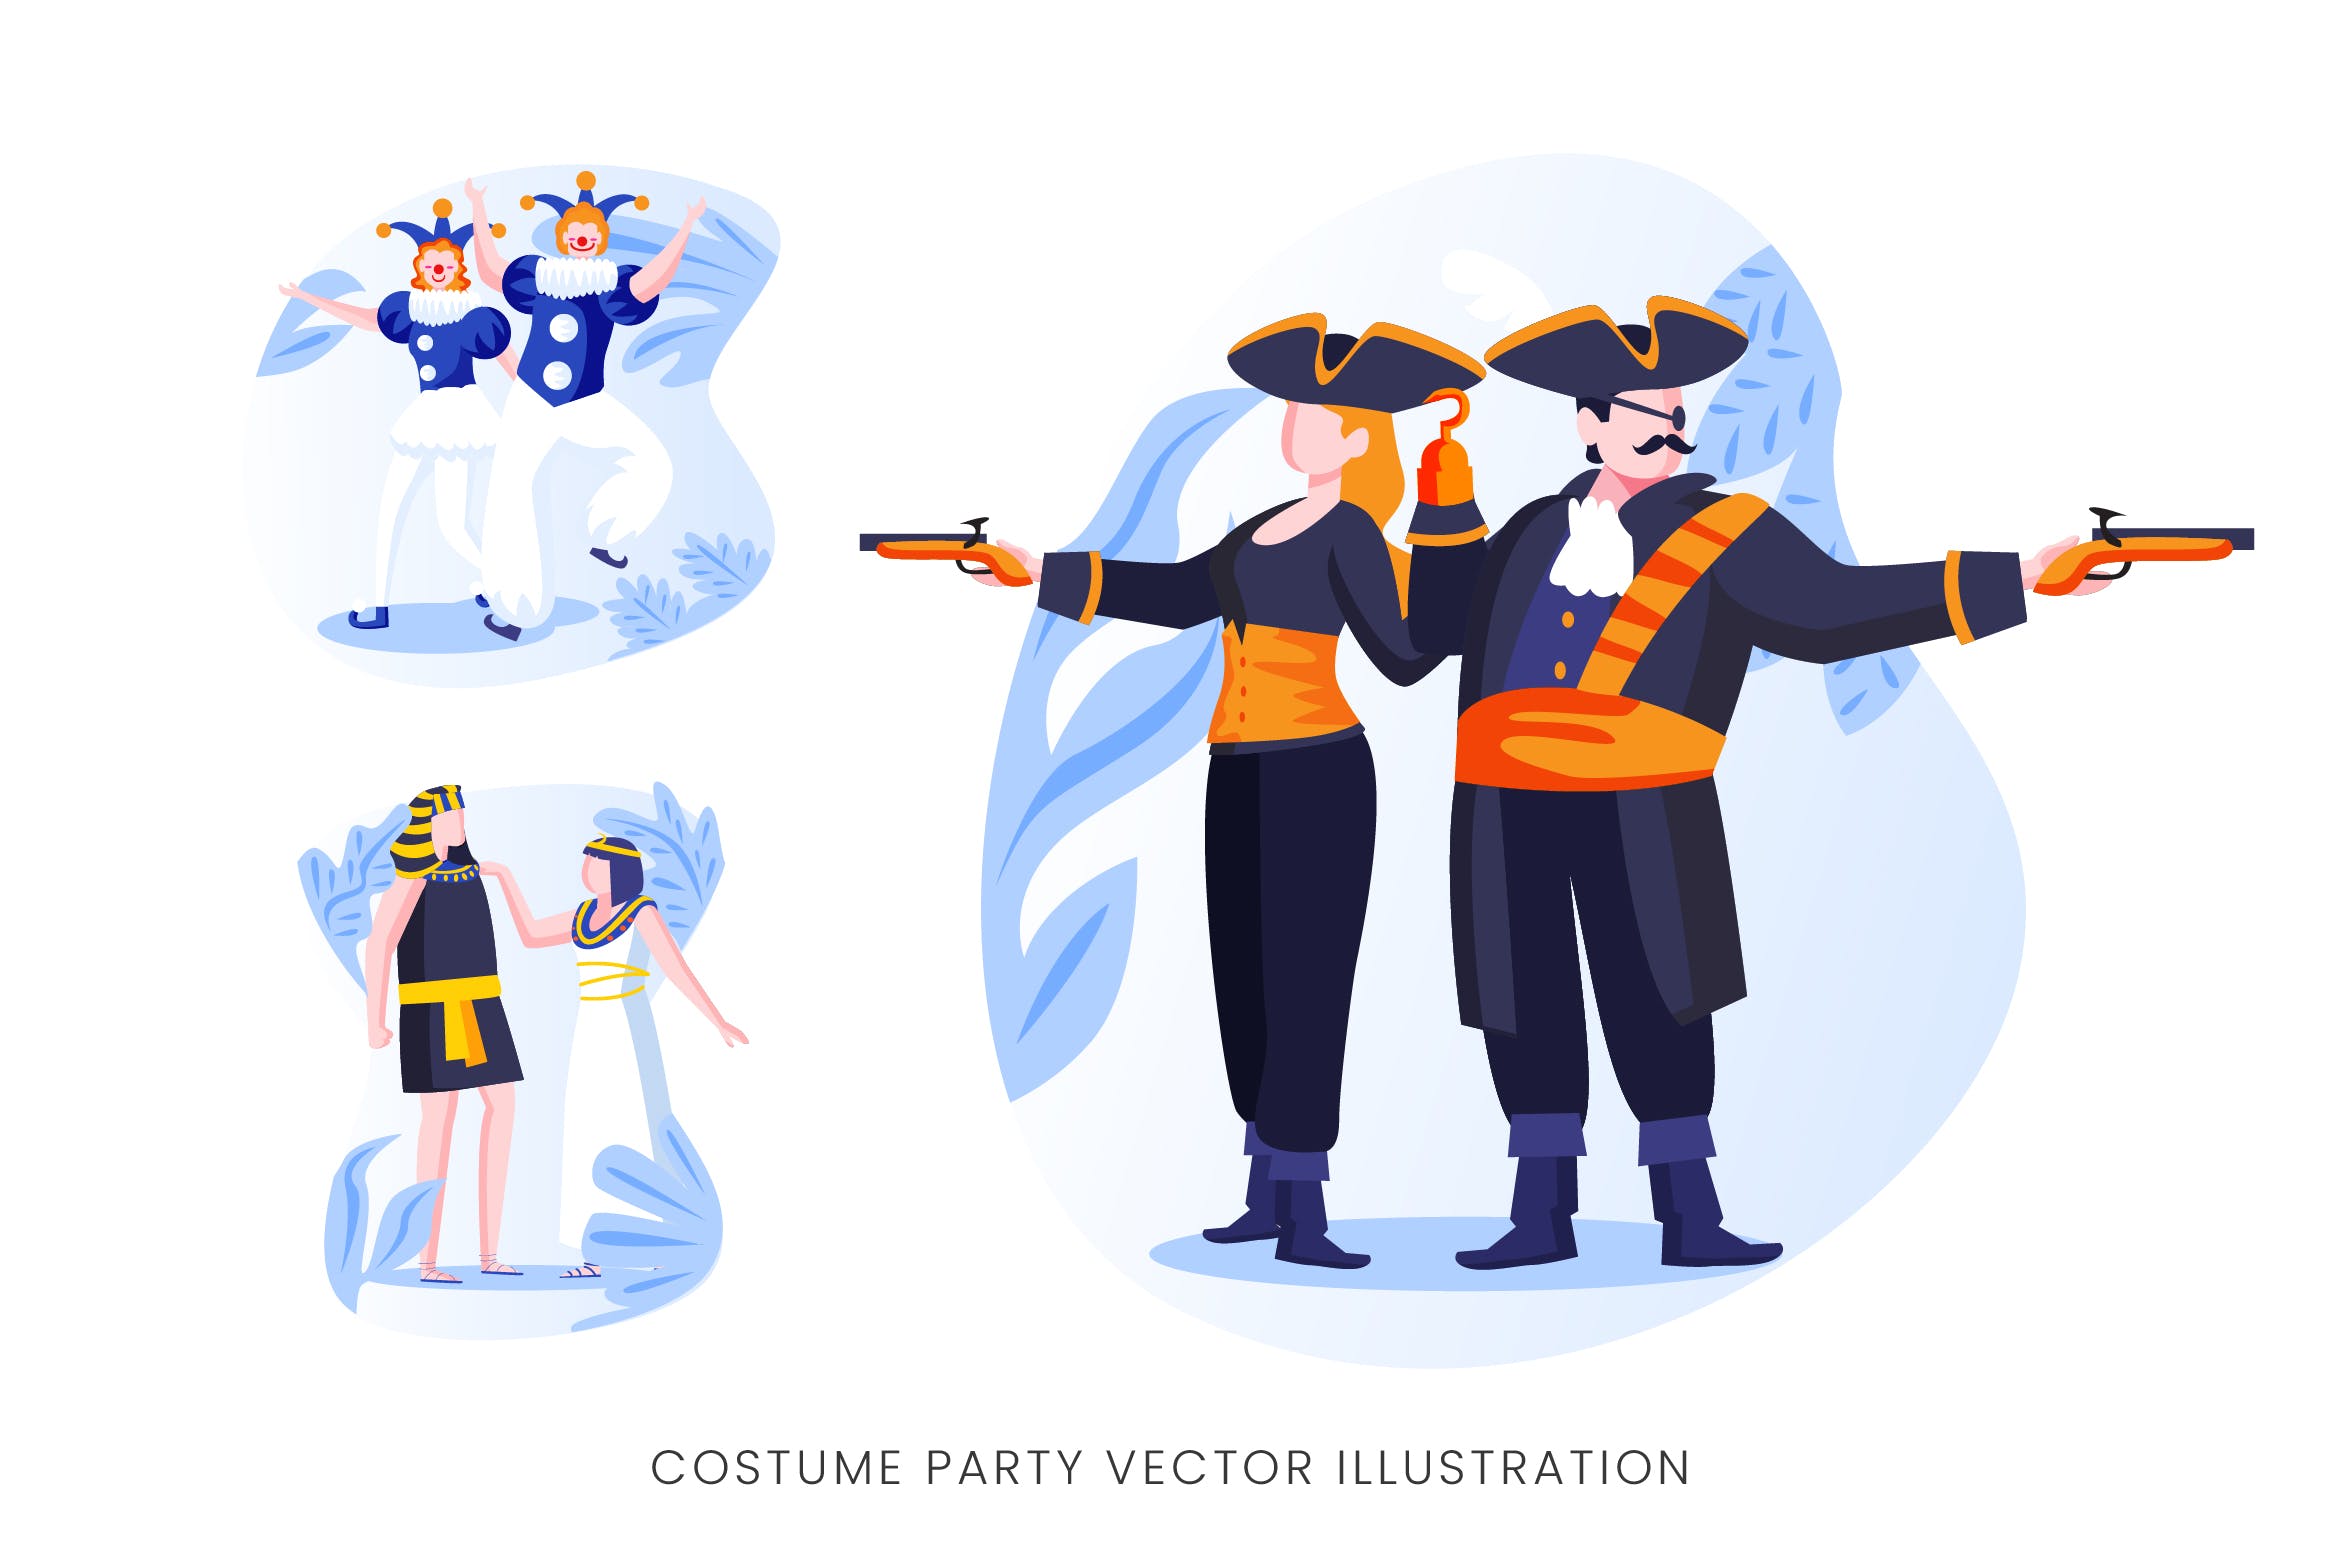 服装Cosplay派对人物形象矢量手绘普贤居精选设计素材 Costume Party Vector Character Set插图